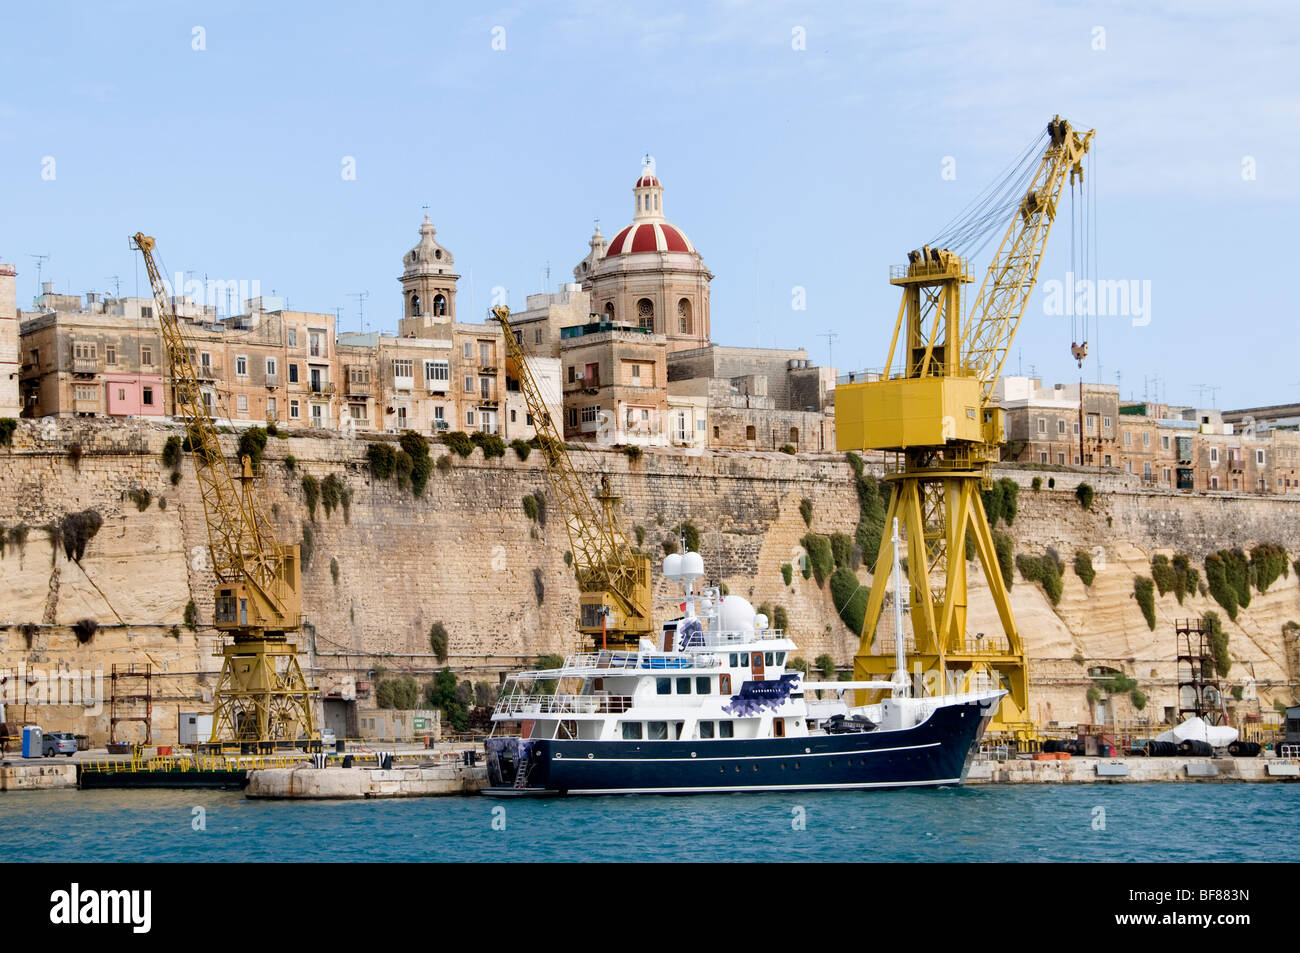 Senglea Malta three cities opposite Fortified City Valletta Stock Photo